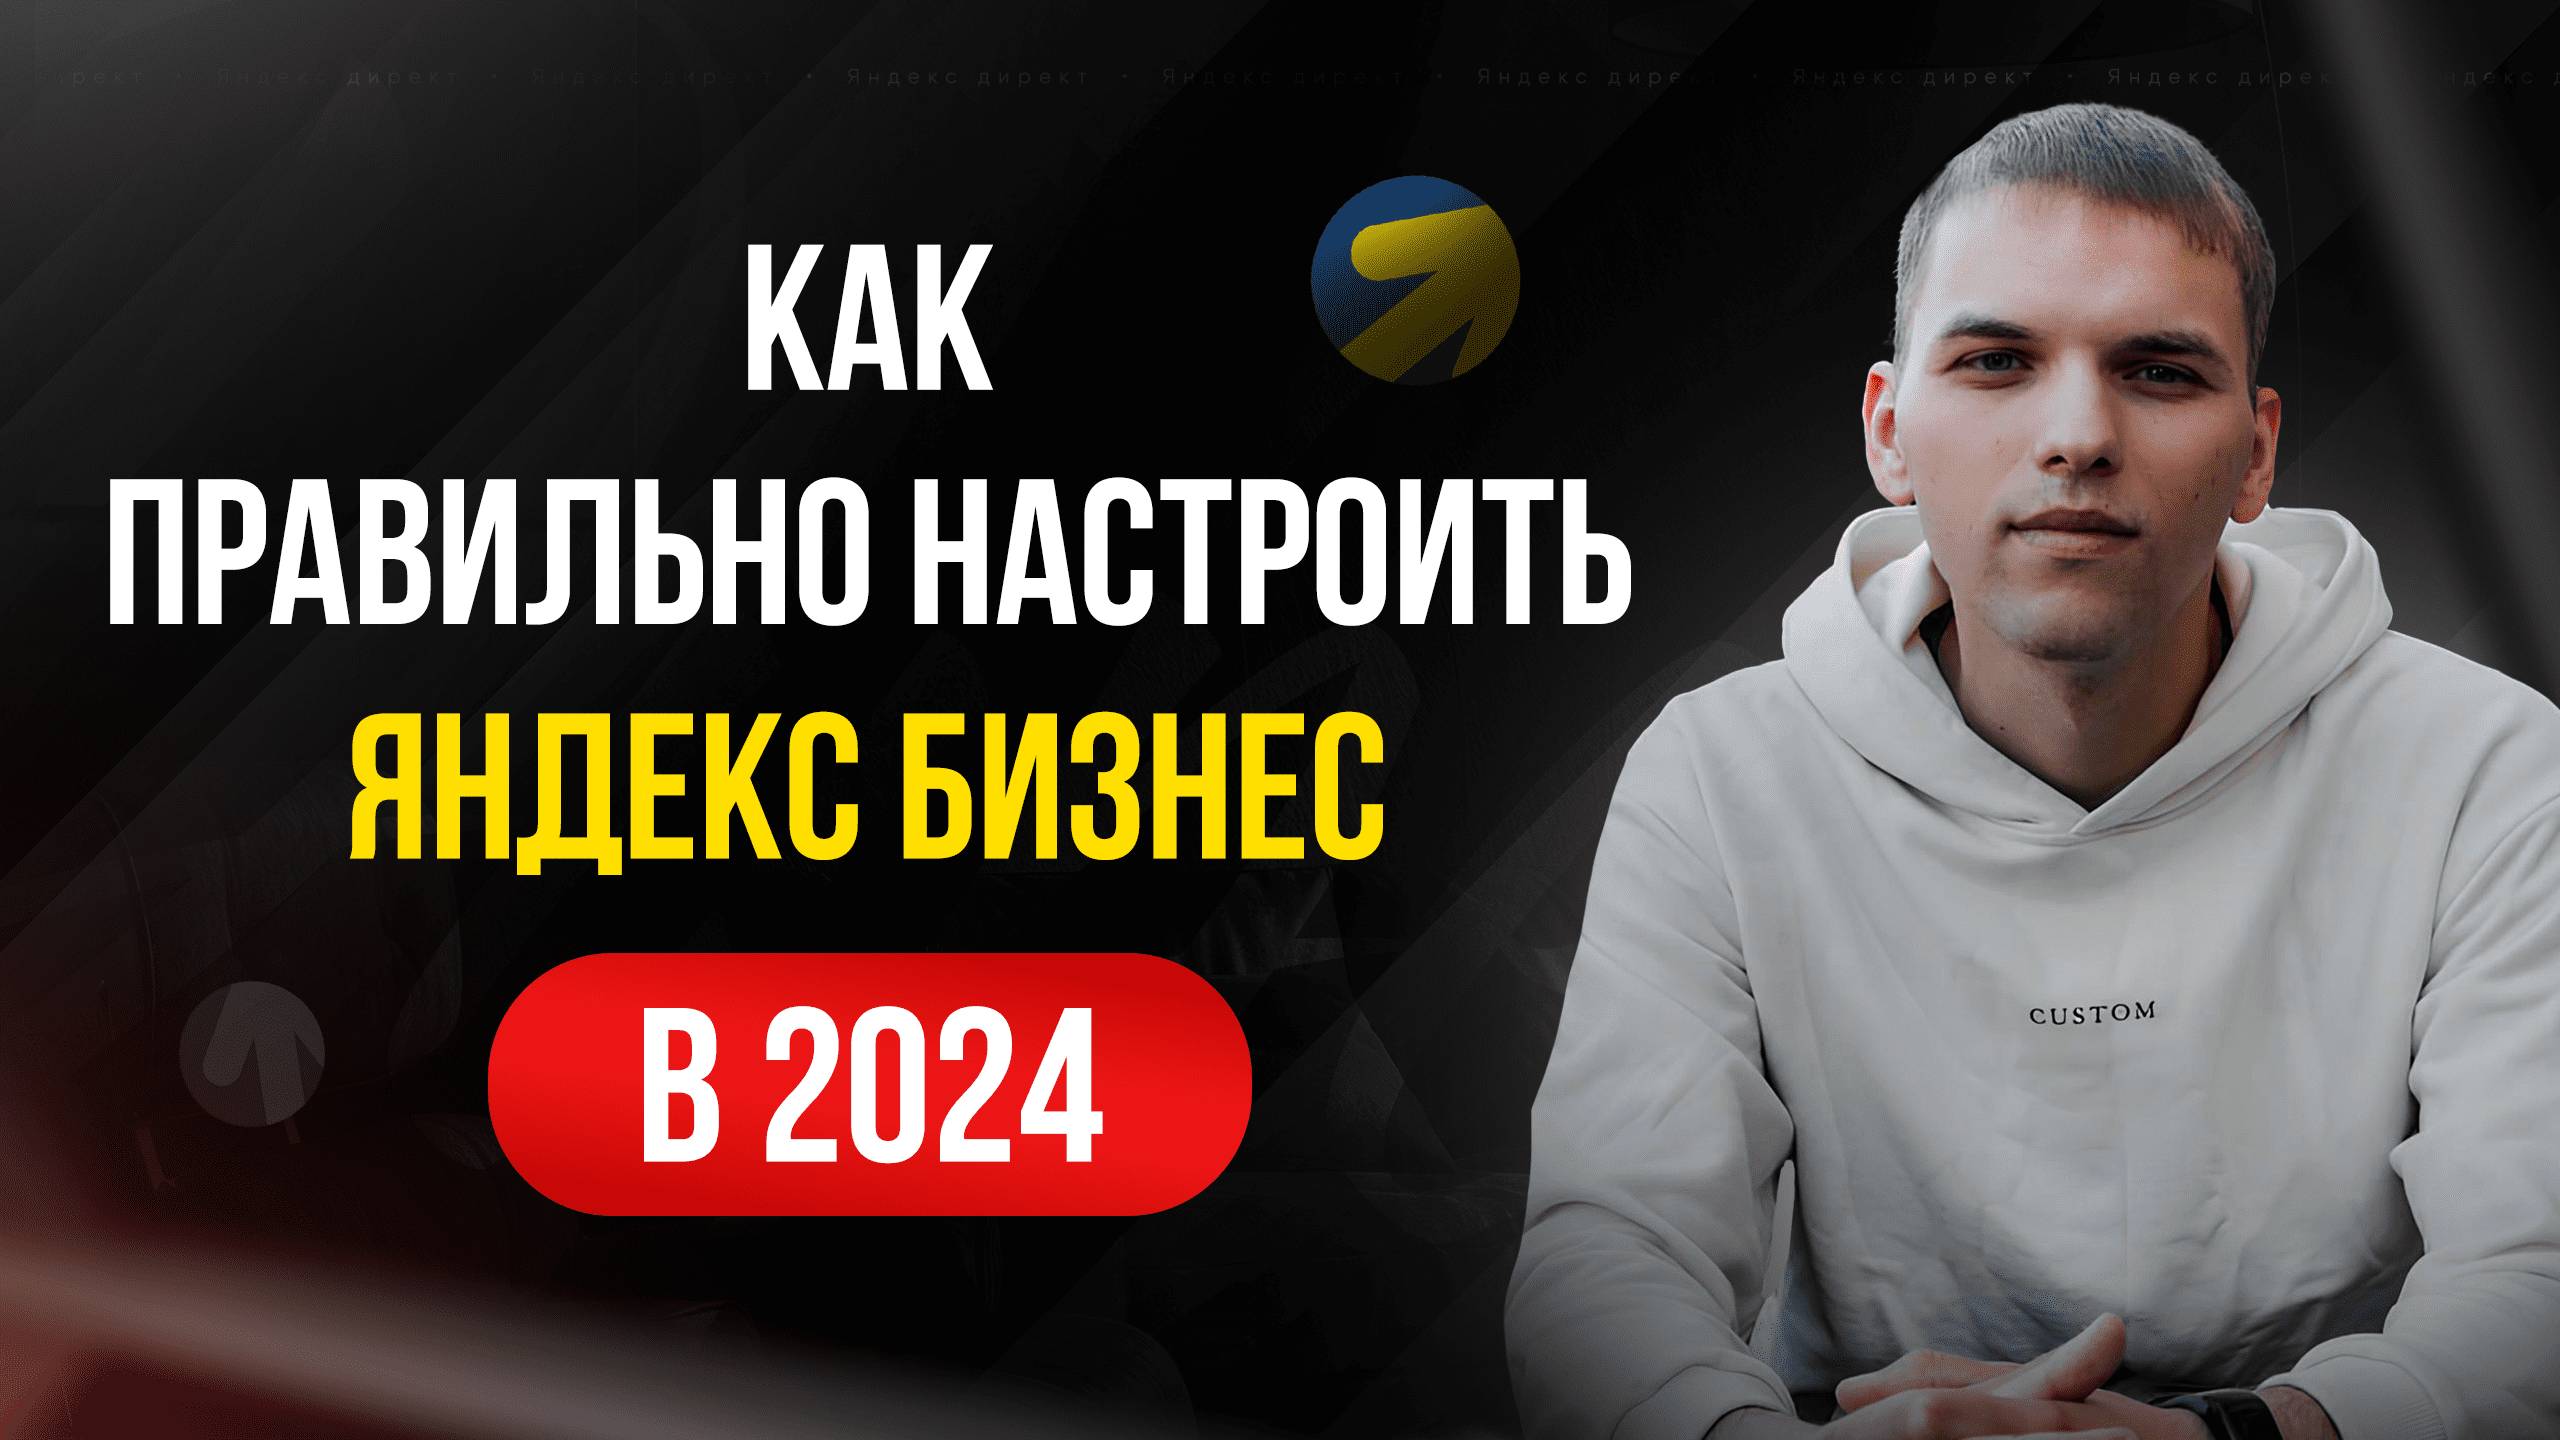 Настройка Яндекс Бизнеса